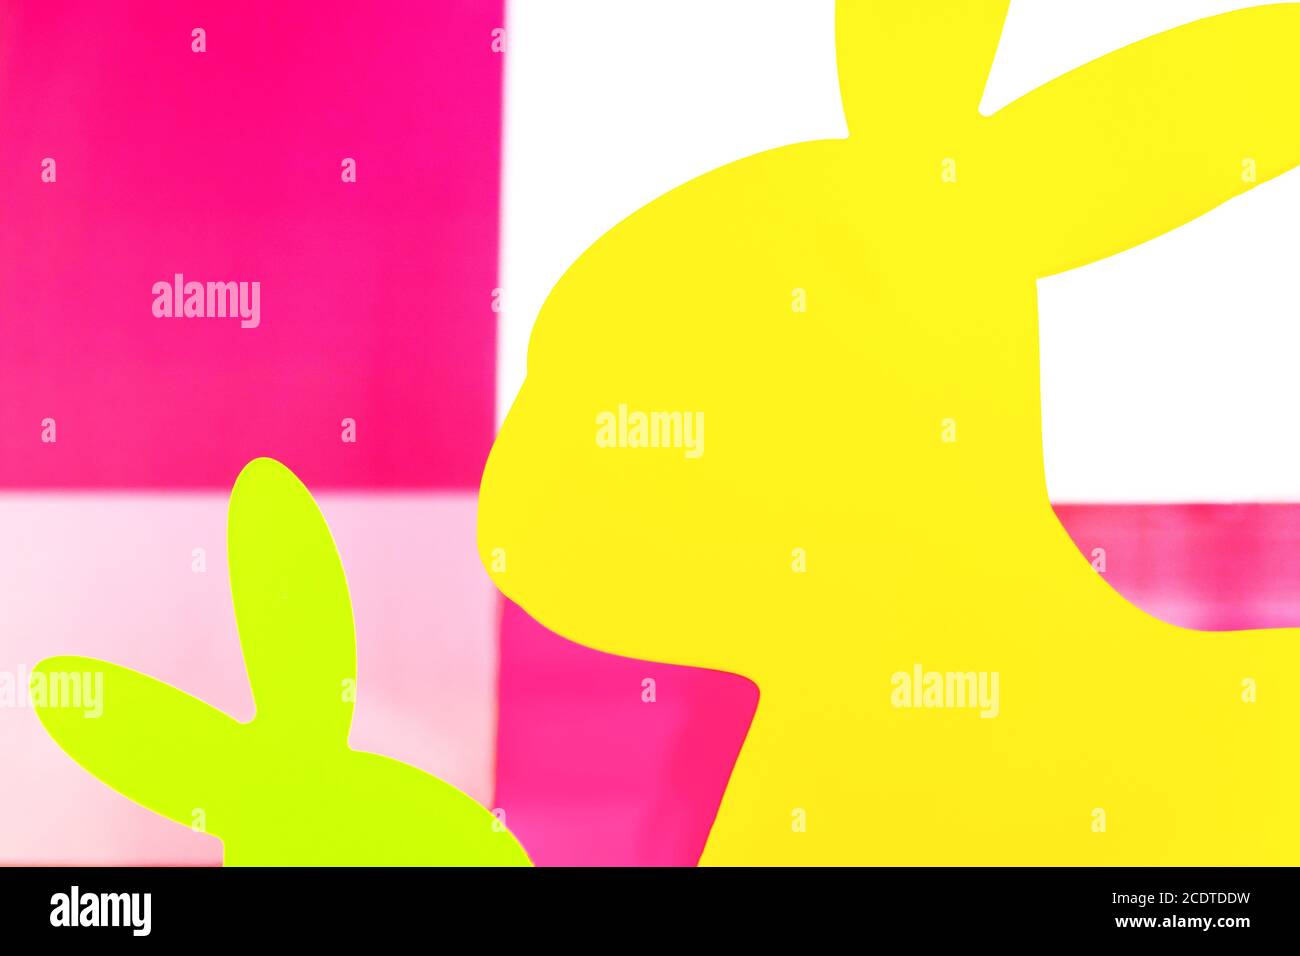 Conigli colorati immagini e fotografie stock ad alta risoluzione - Alamy